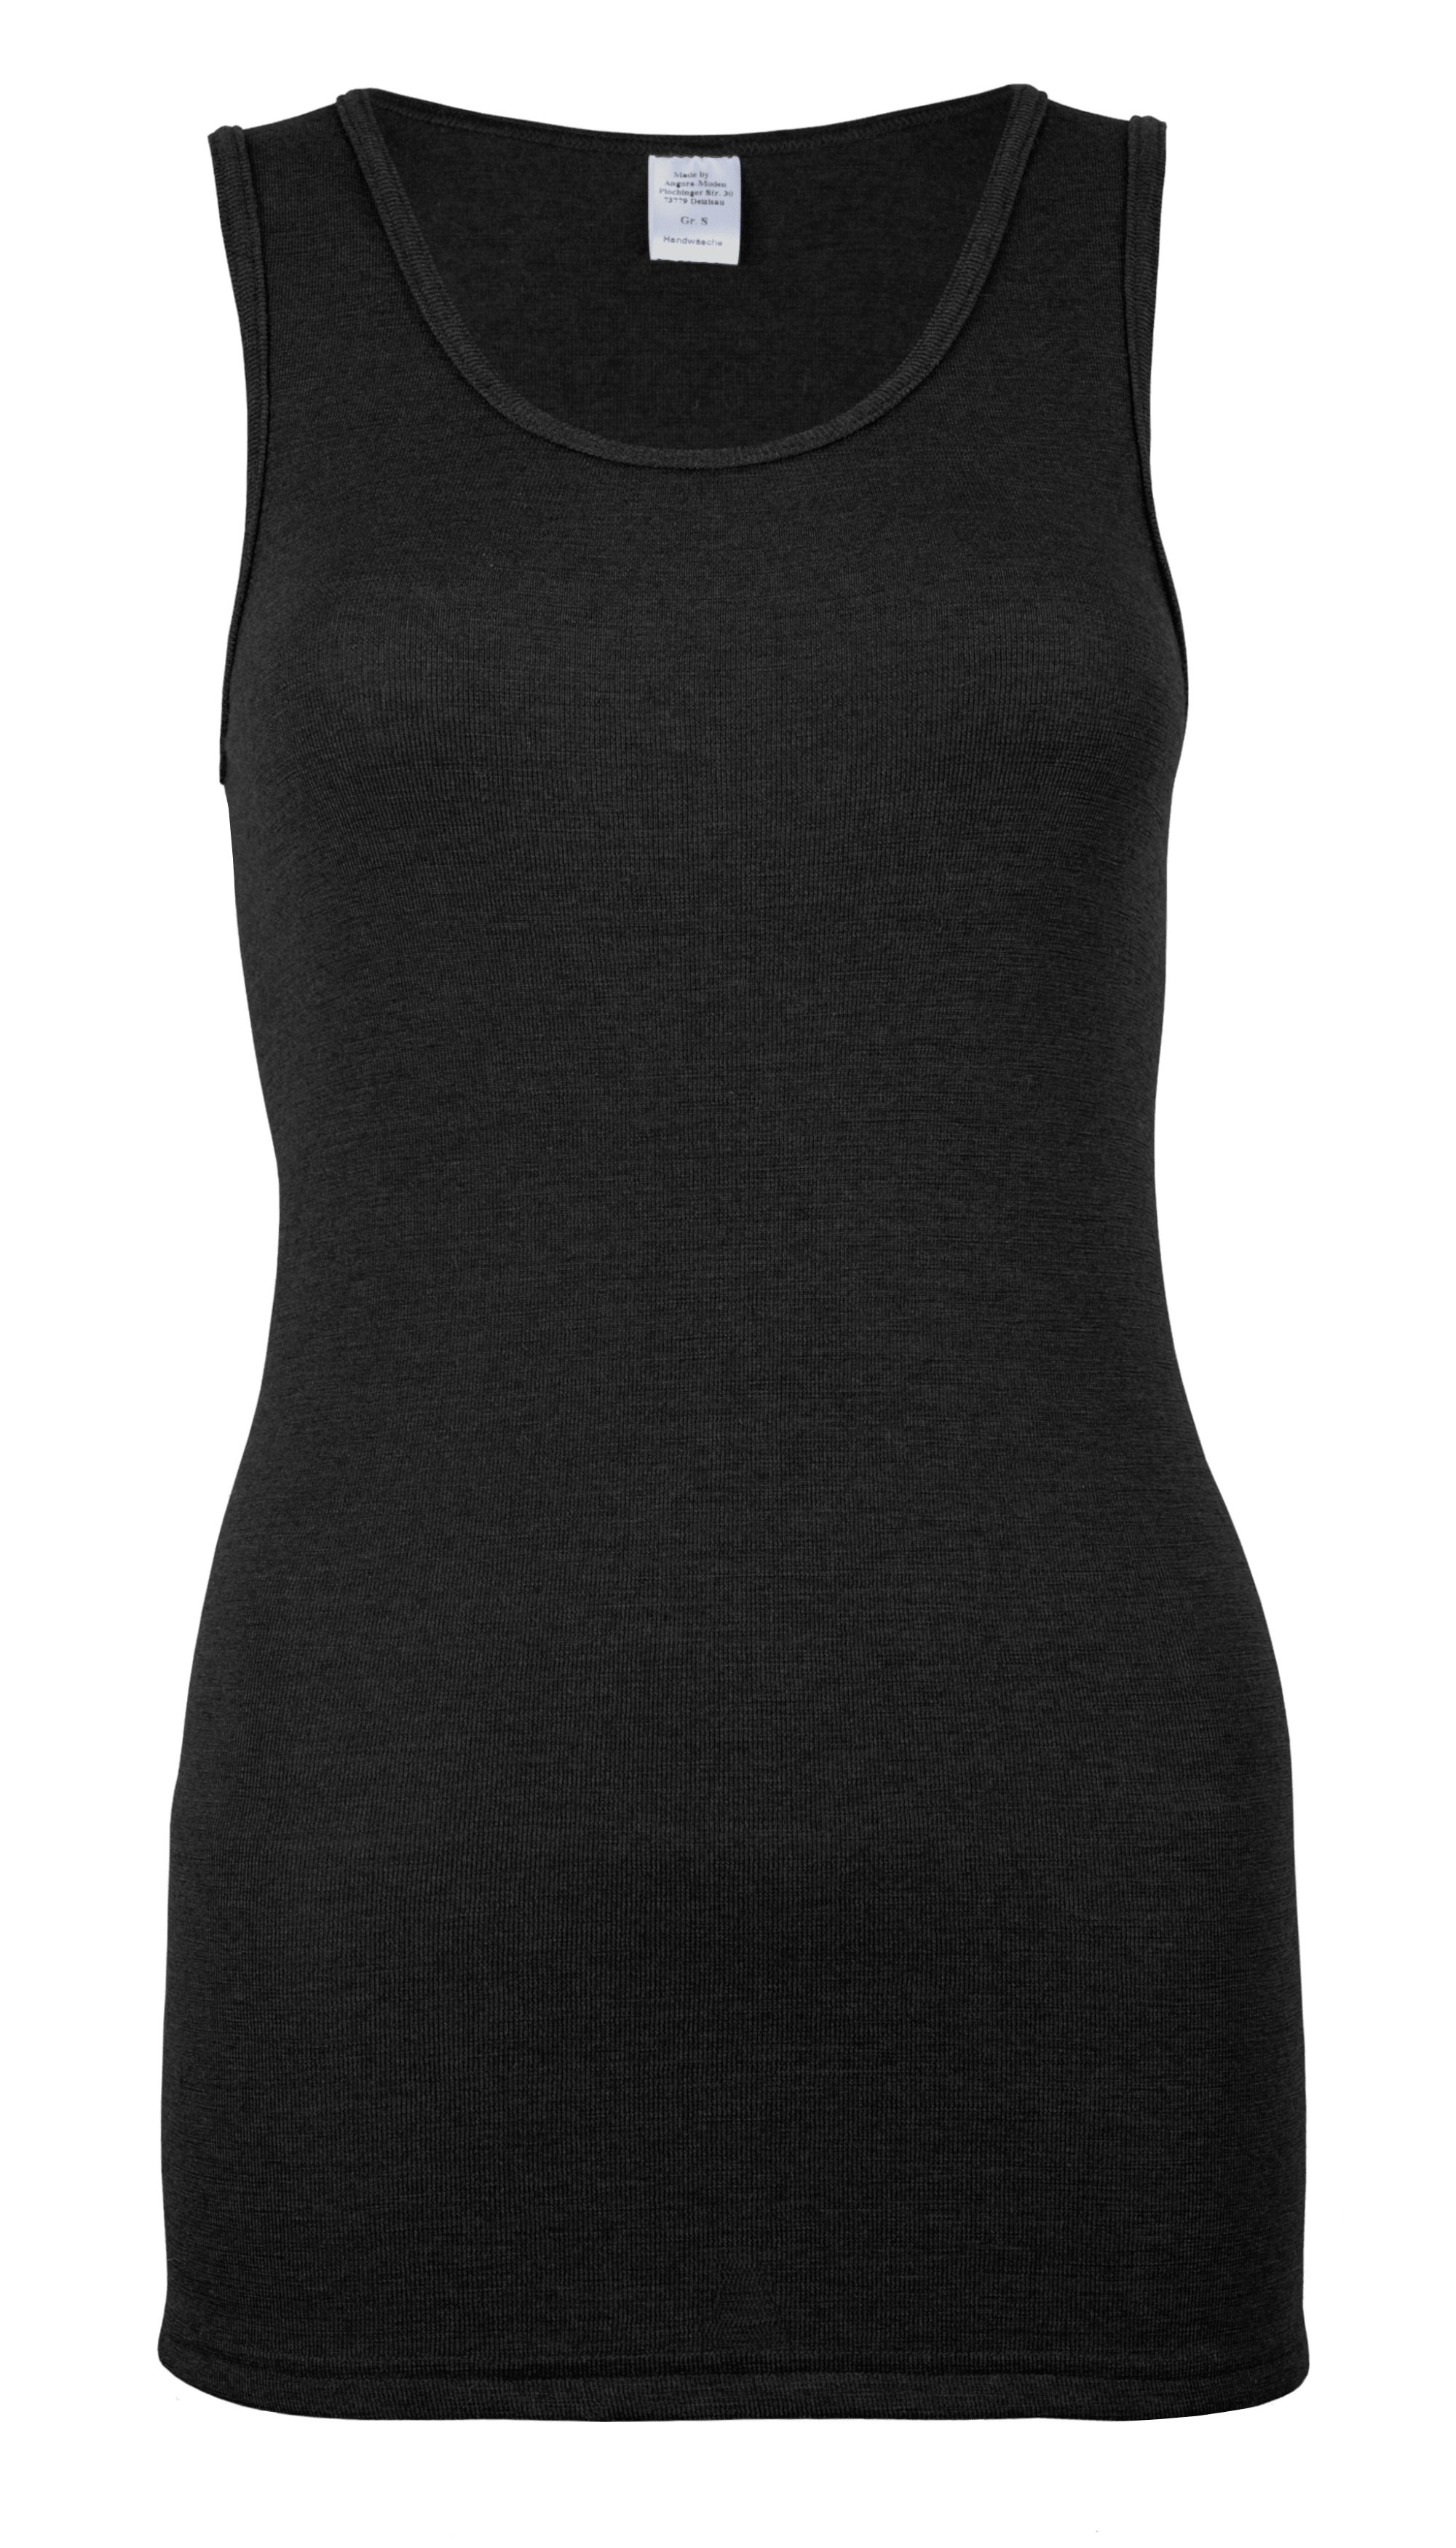 wobera NATUR Unterhemd Tanktop oder Unterhemd ohne Arm für Damen mit Schurwolle GOTS&Seide Hergestellt in Deutschland schwarz